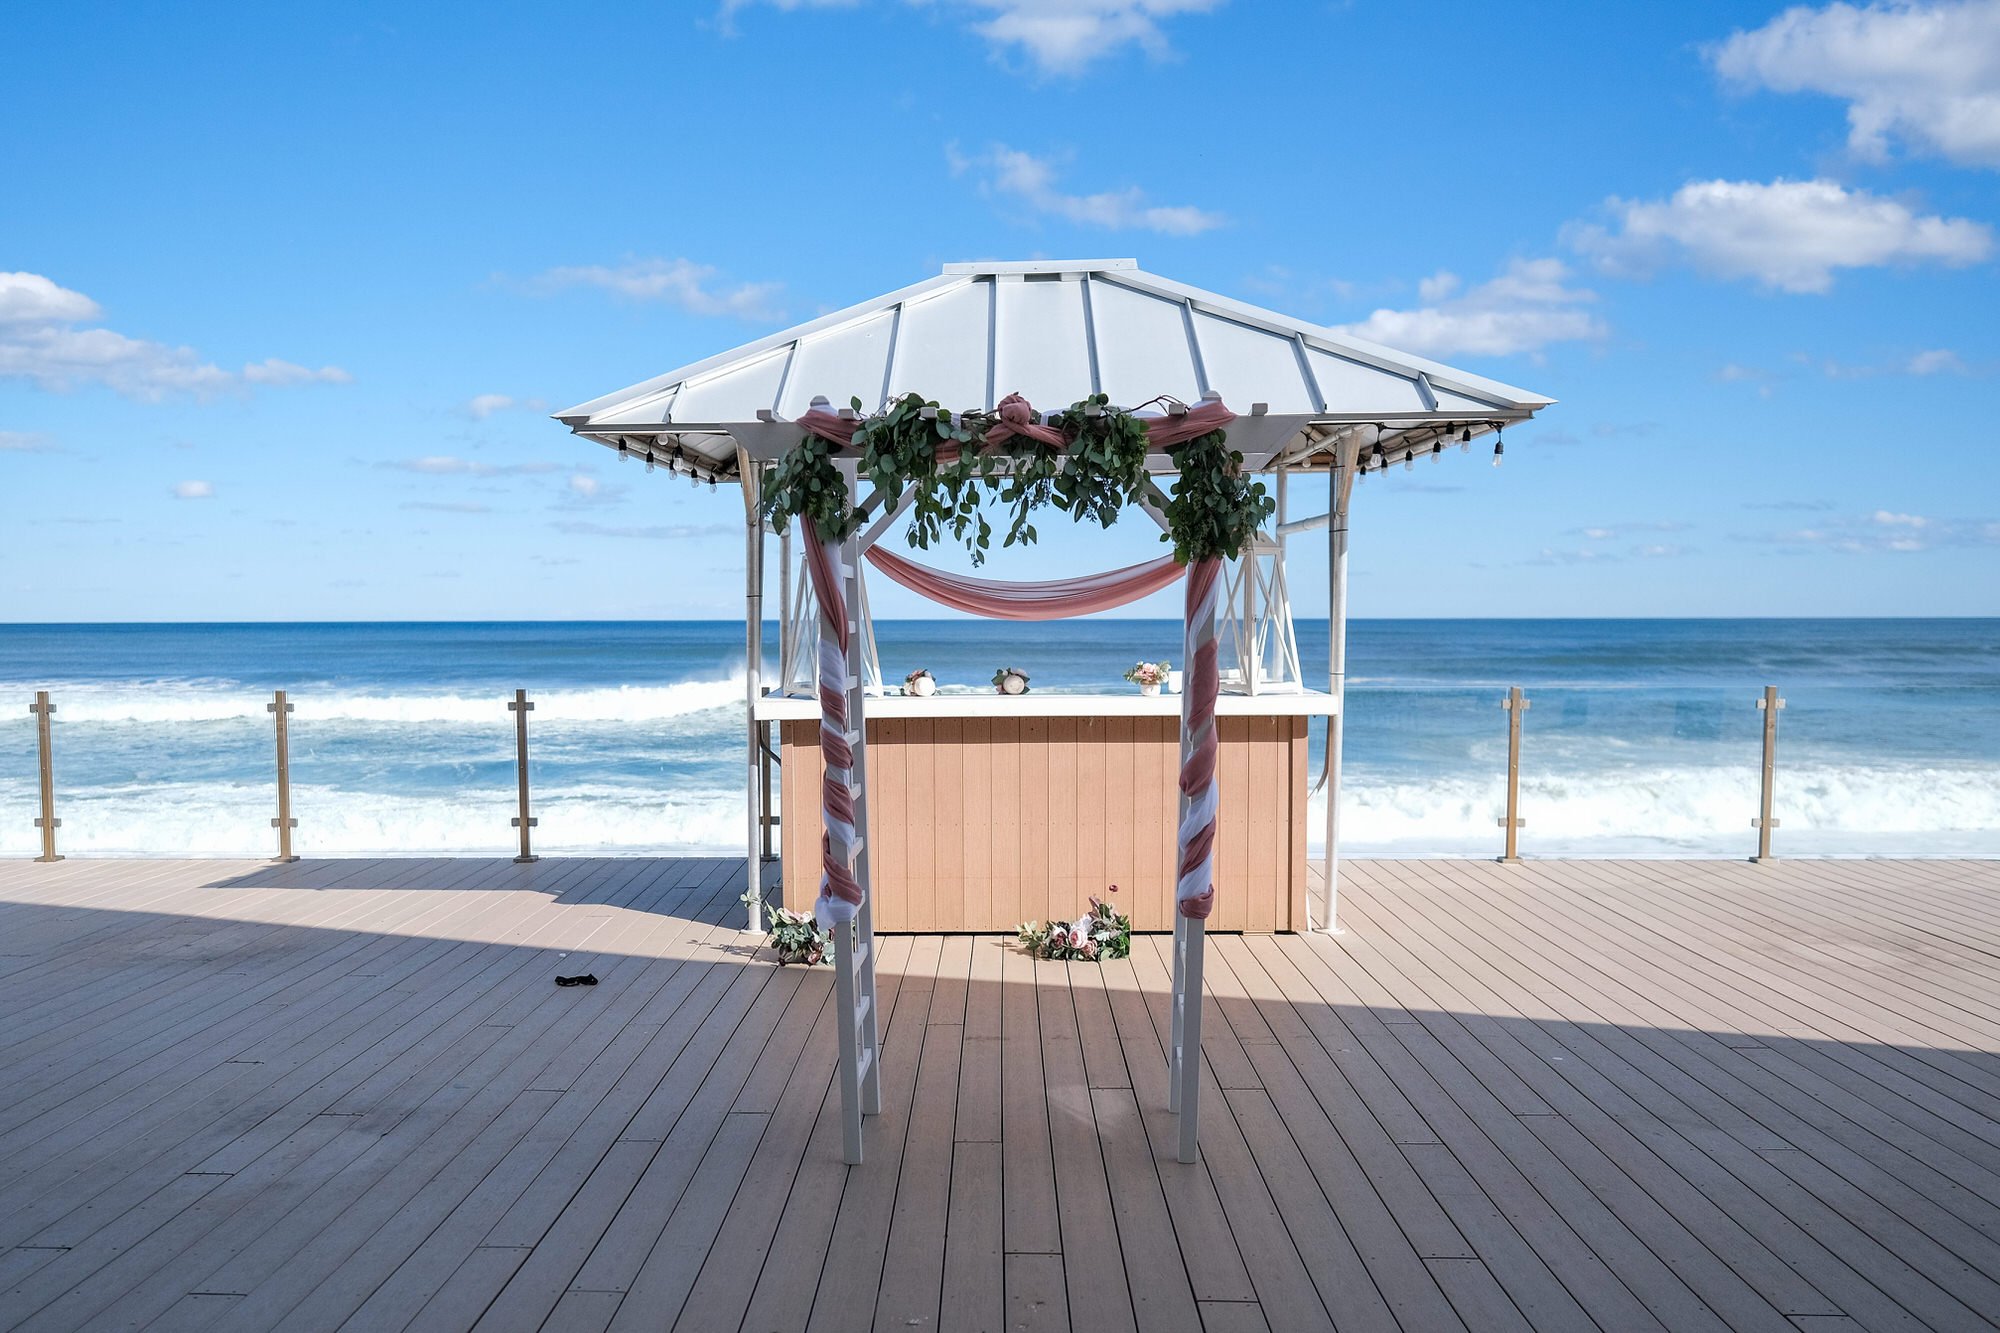 Blue_Ocean_Event_Center_Beach_Wedding_Salisbury-8.jpg